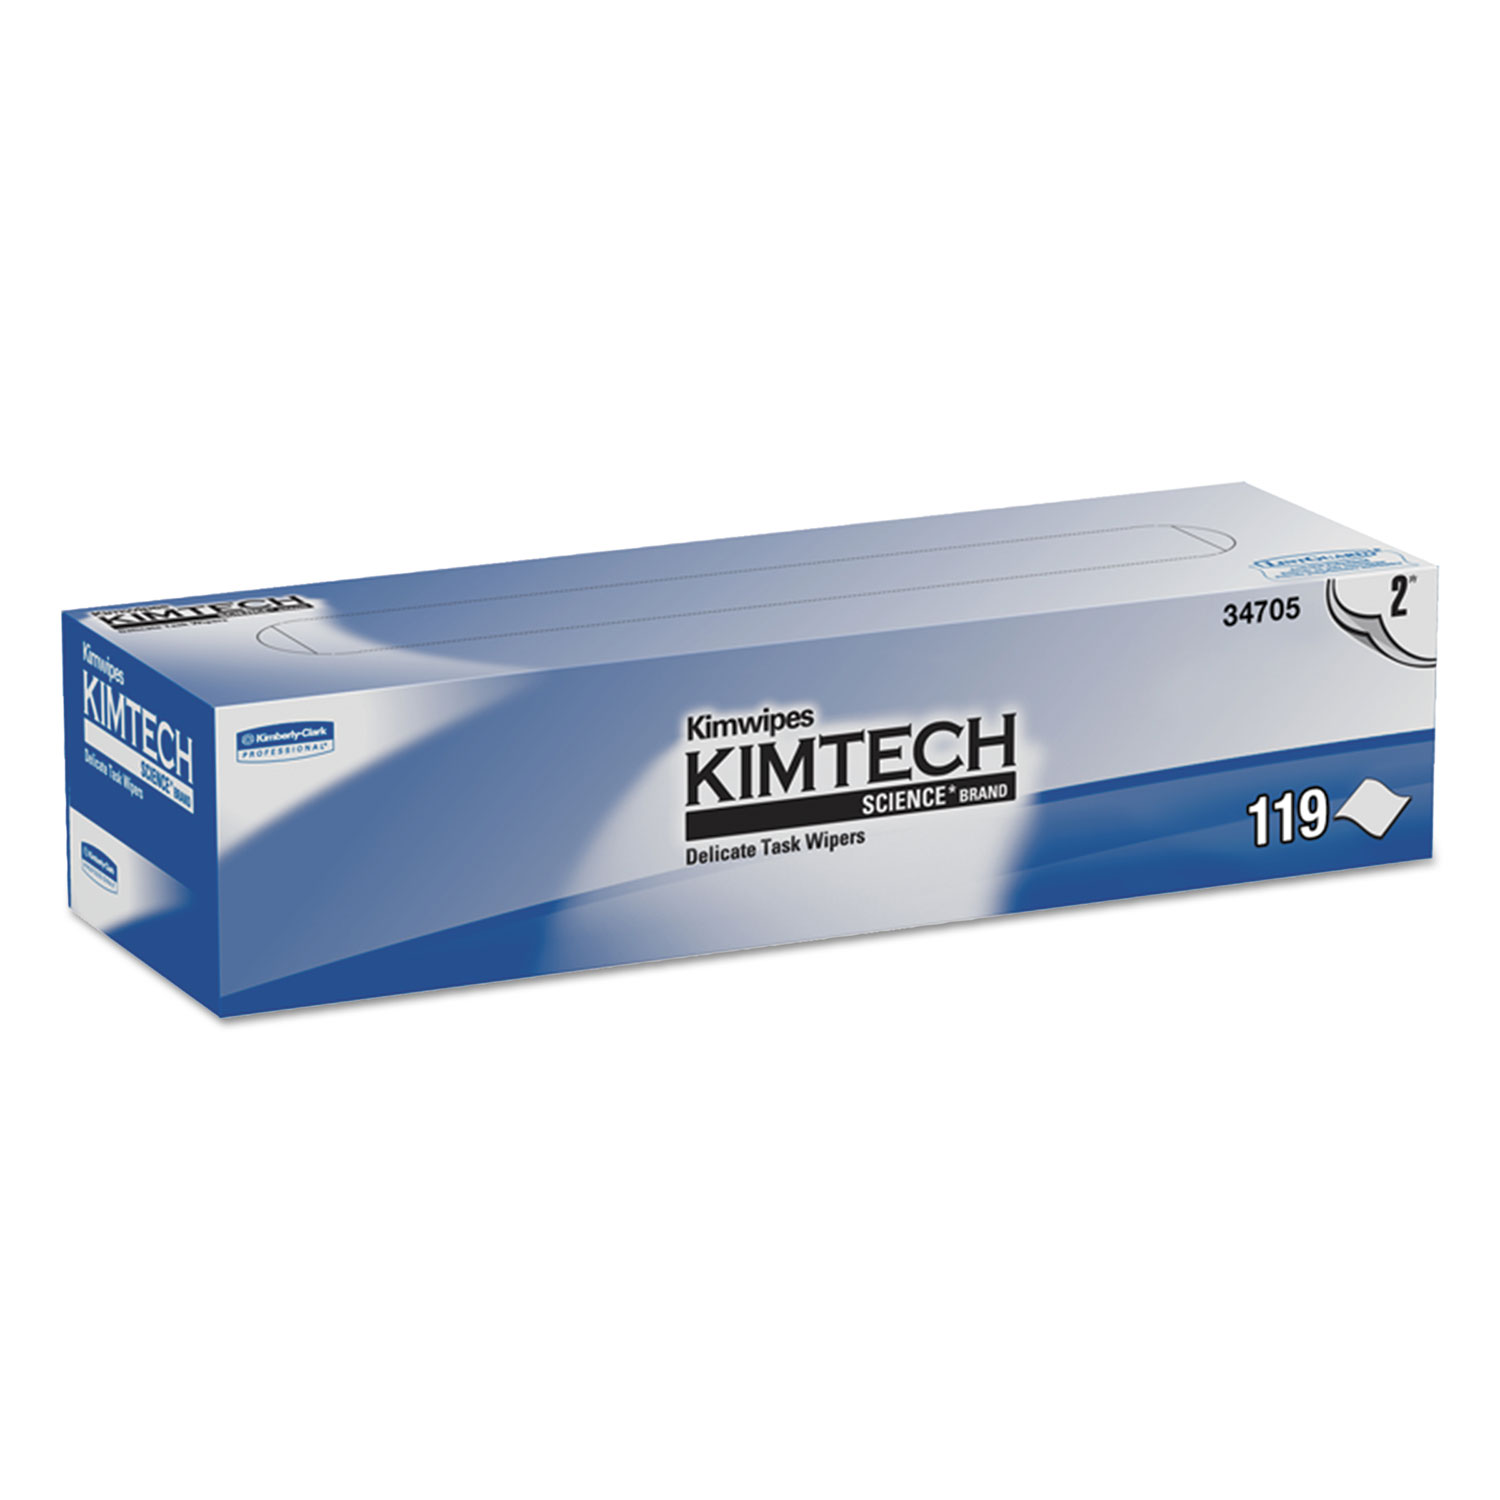  Kimtech 34705 Kimwipes Delicate Task Wipers, 2-Ply, 11 4/5 x 11 4/5, 119/Box, 15 Boxes/Carton (KCC34705) 